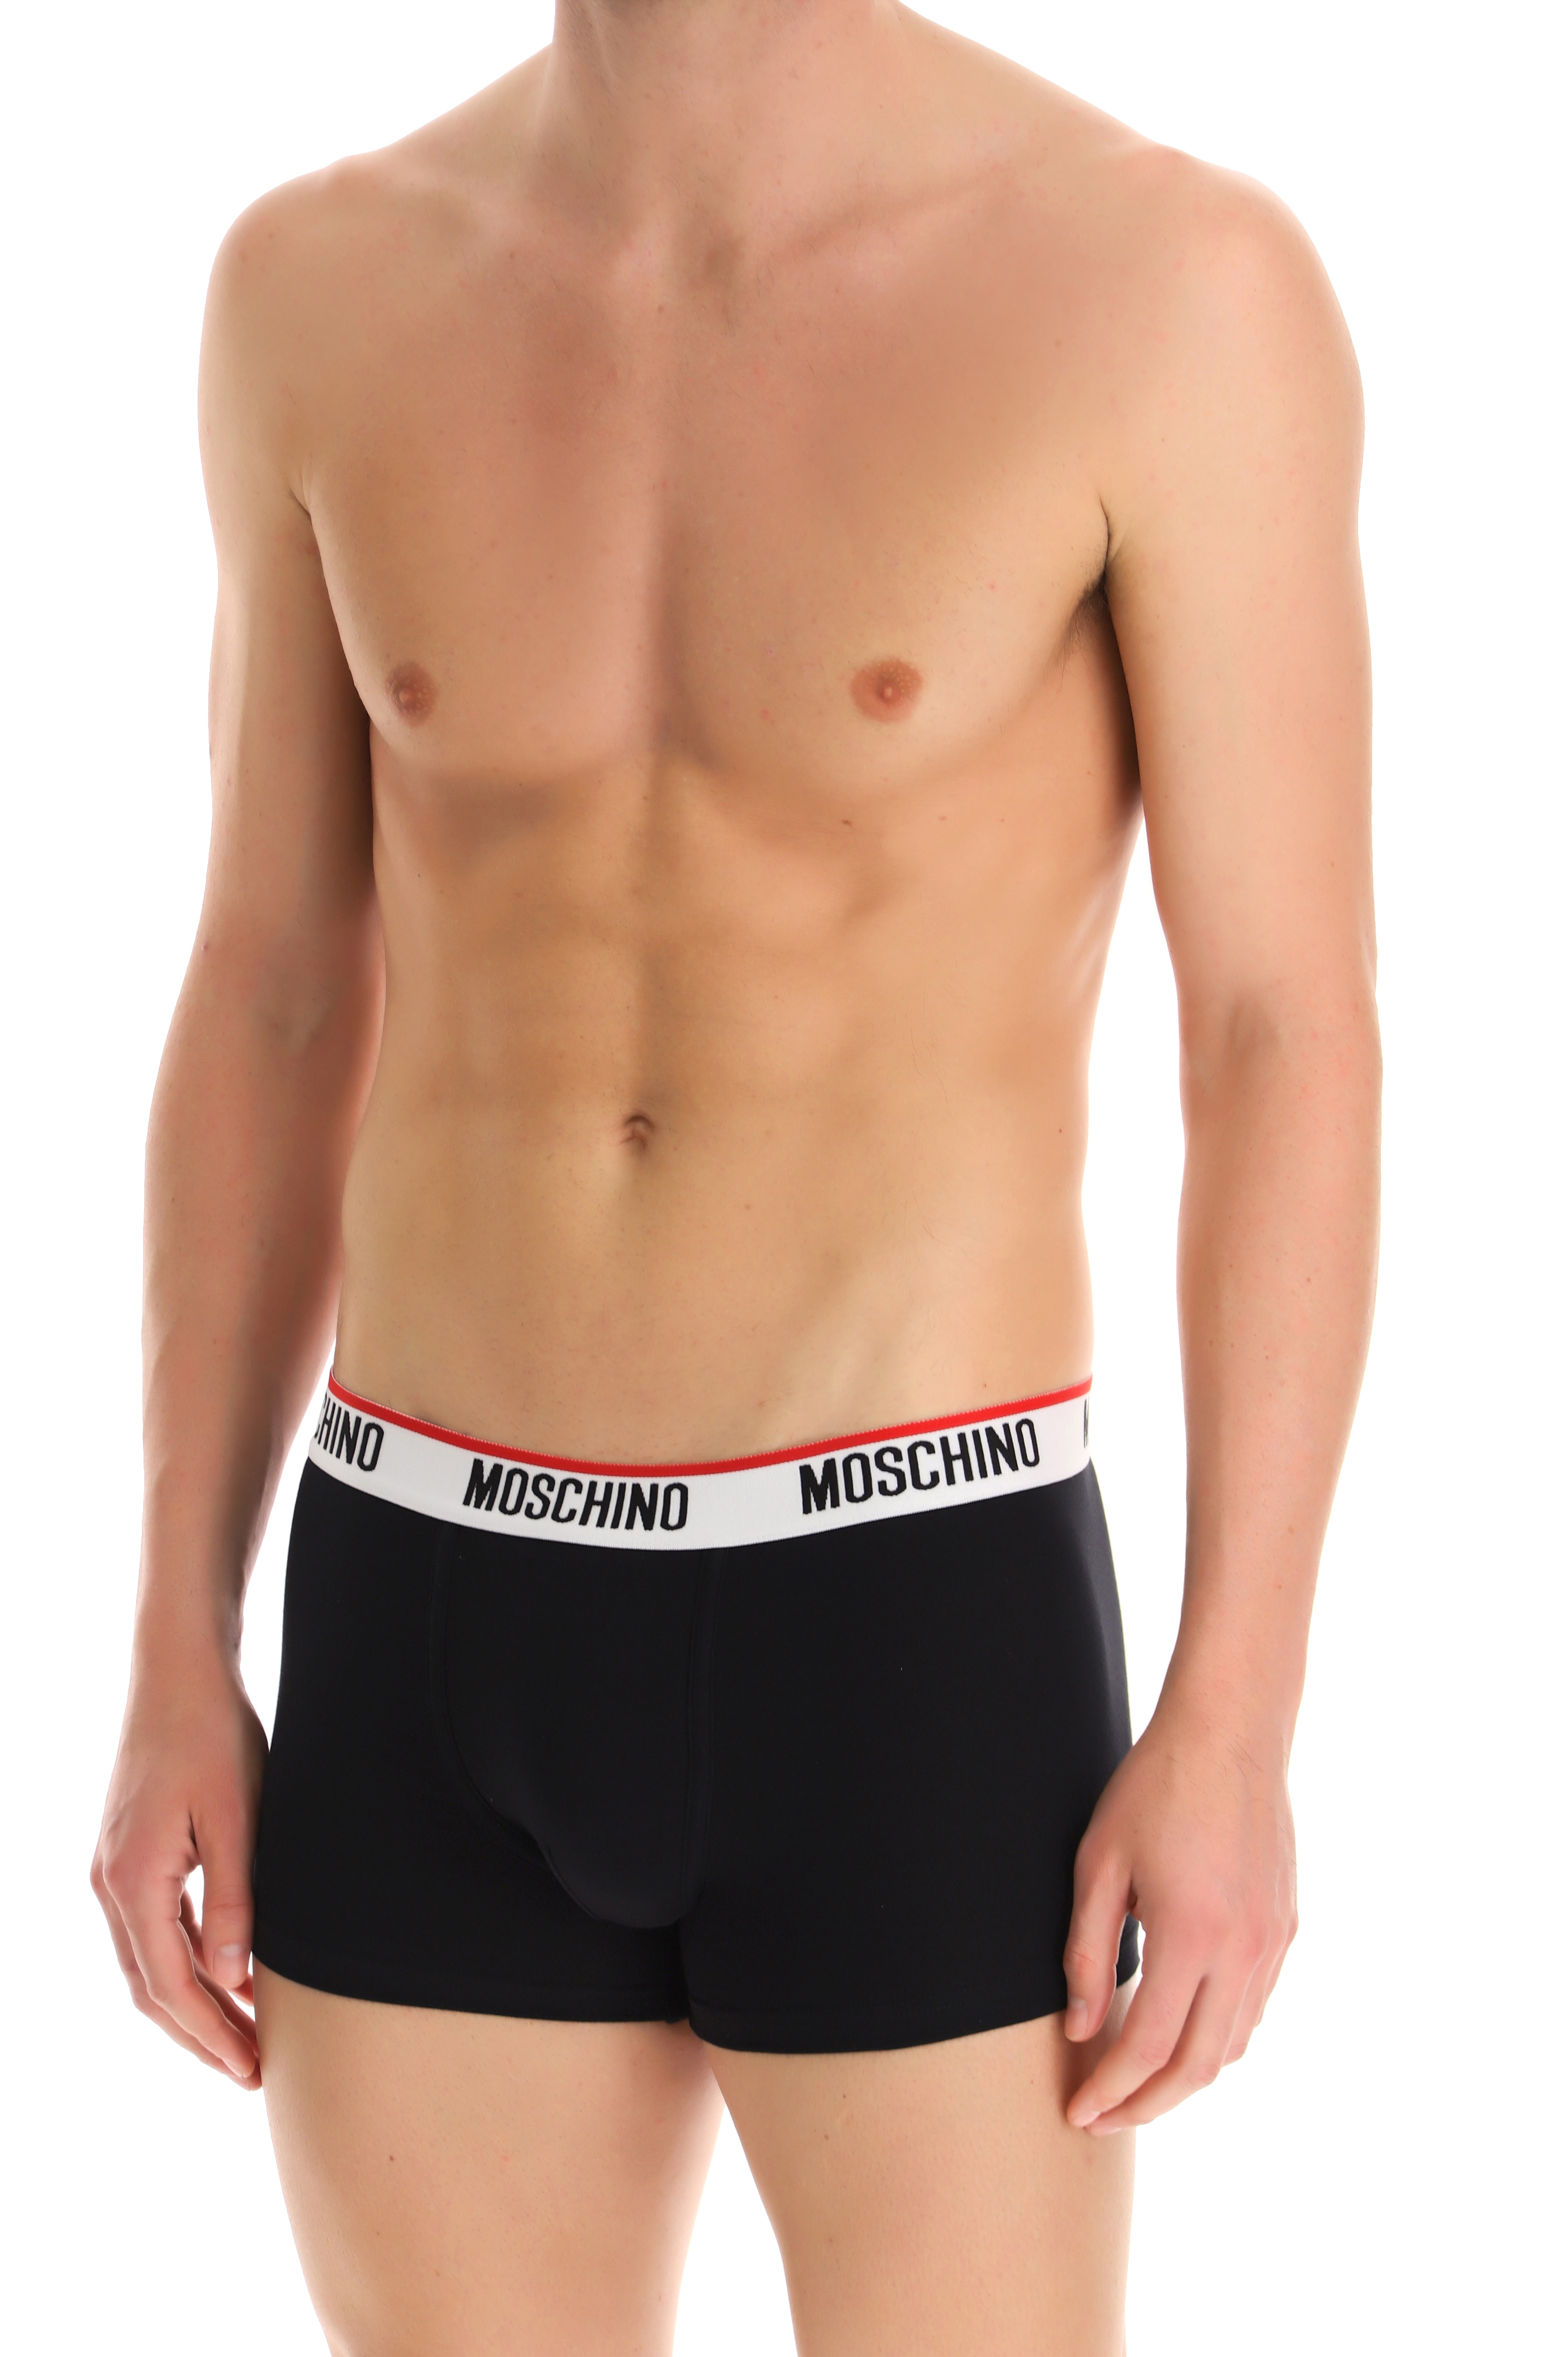 Moschino Underwear, Moschino Boxers & Briefs